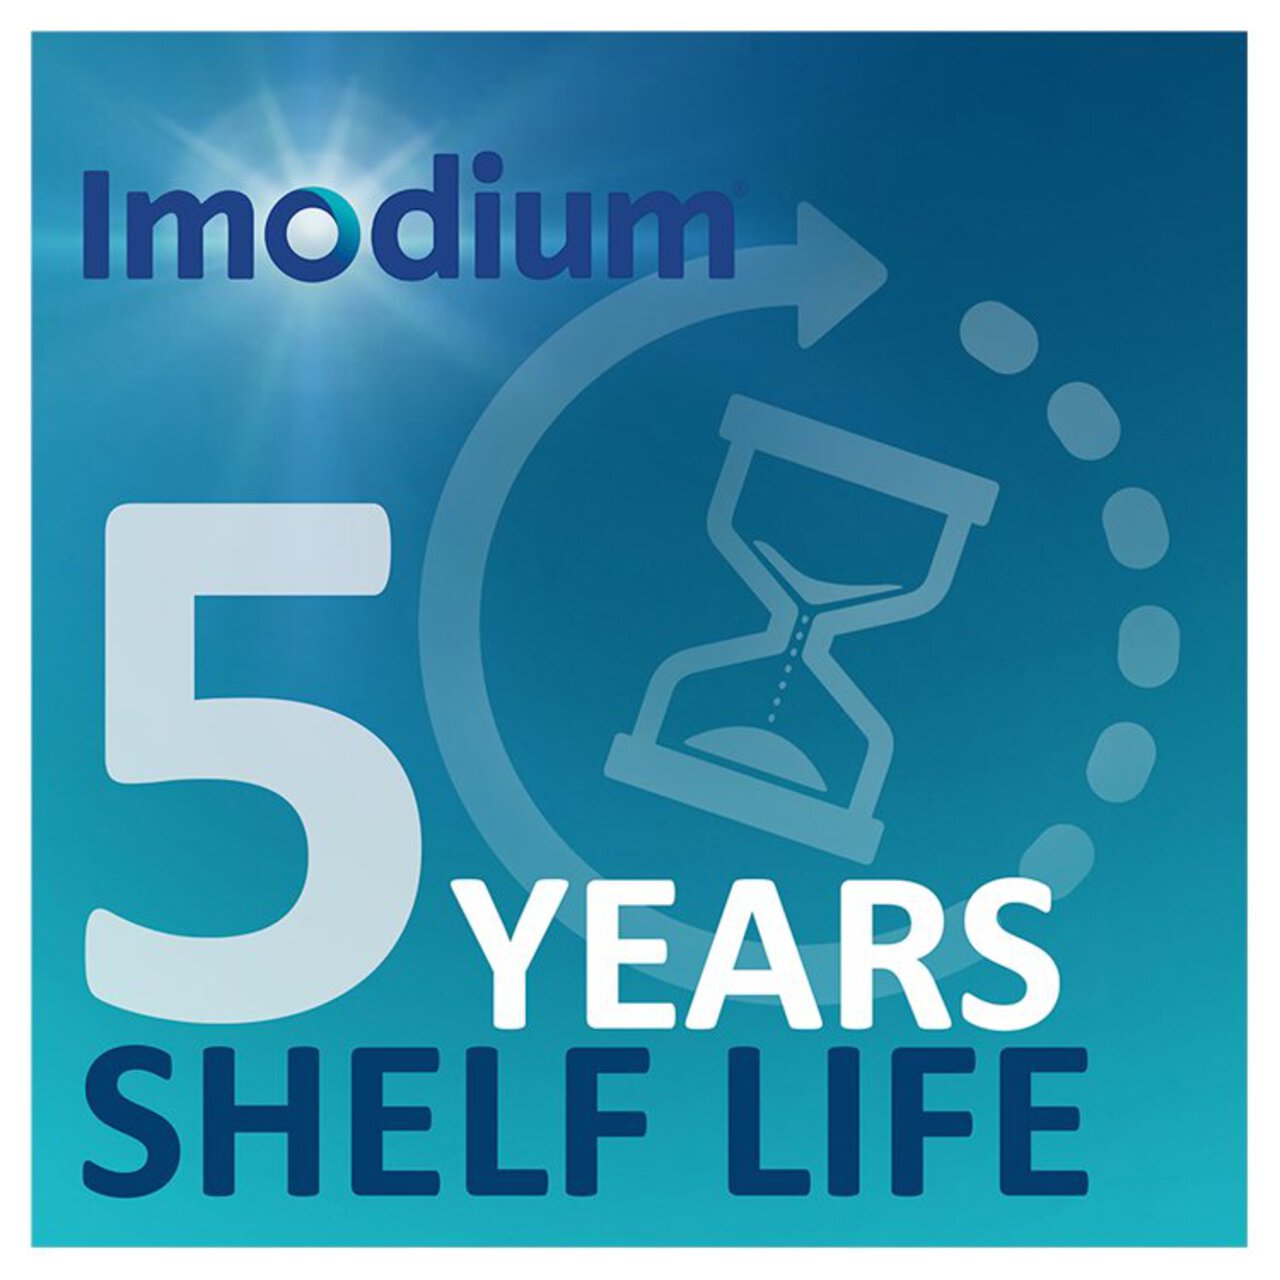 Imodium Original 2 mg Diarrhoea Relief 6 per pack